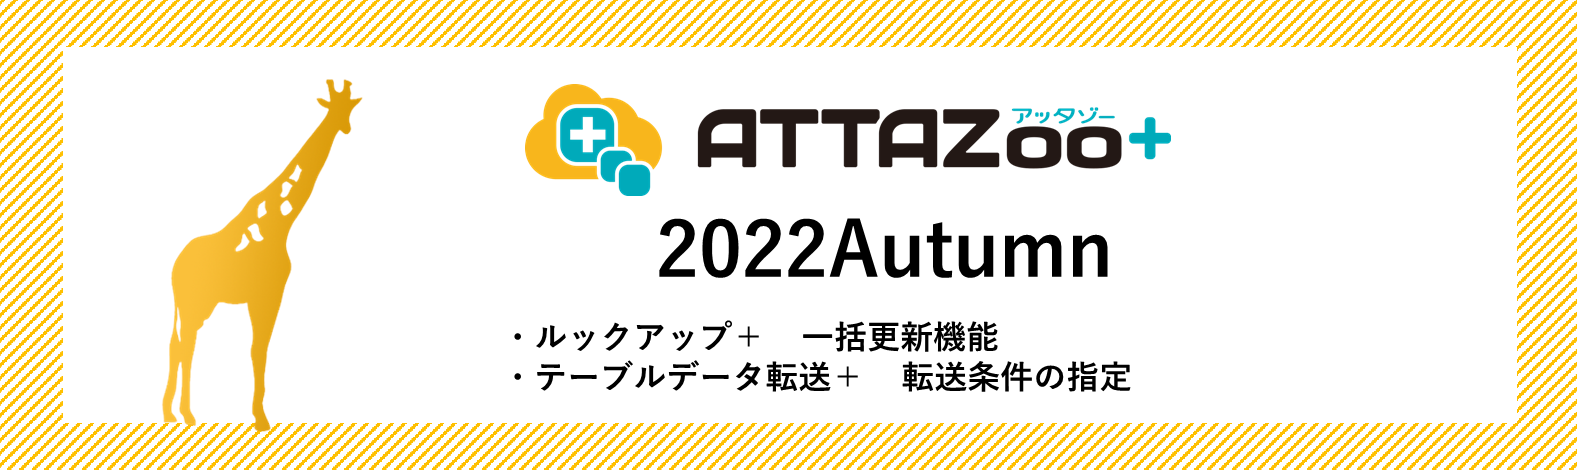 2022Autumn_1